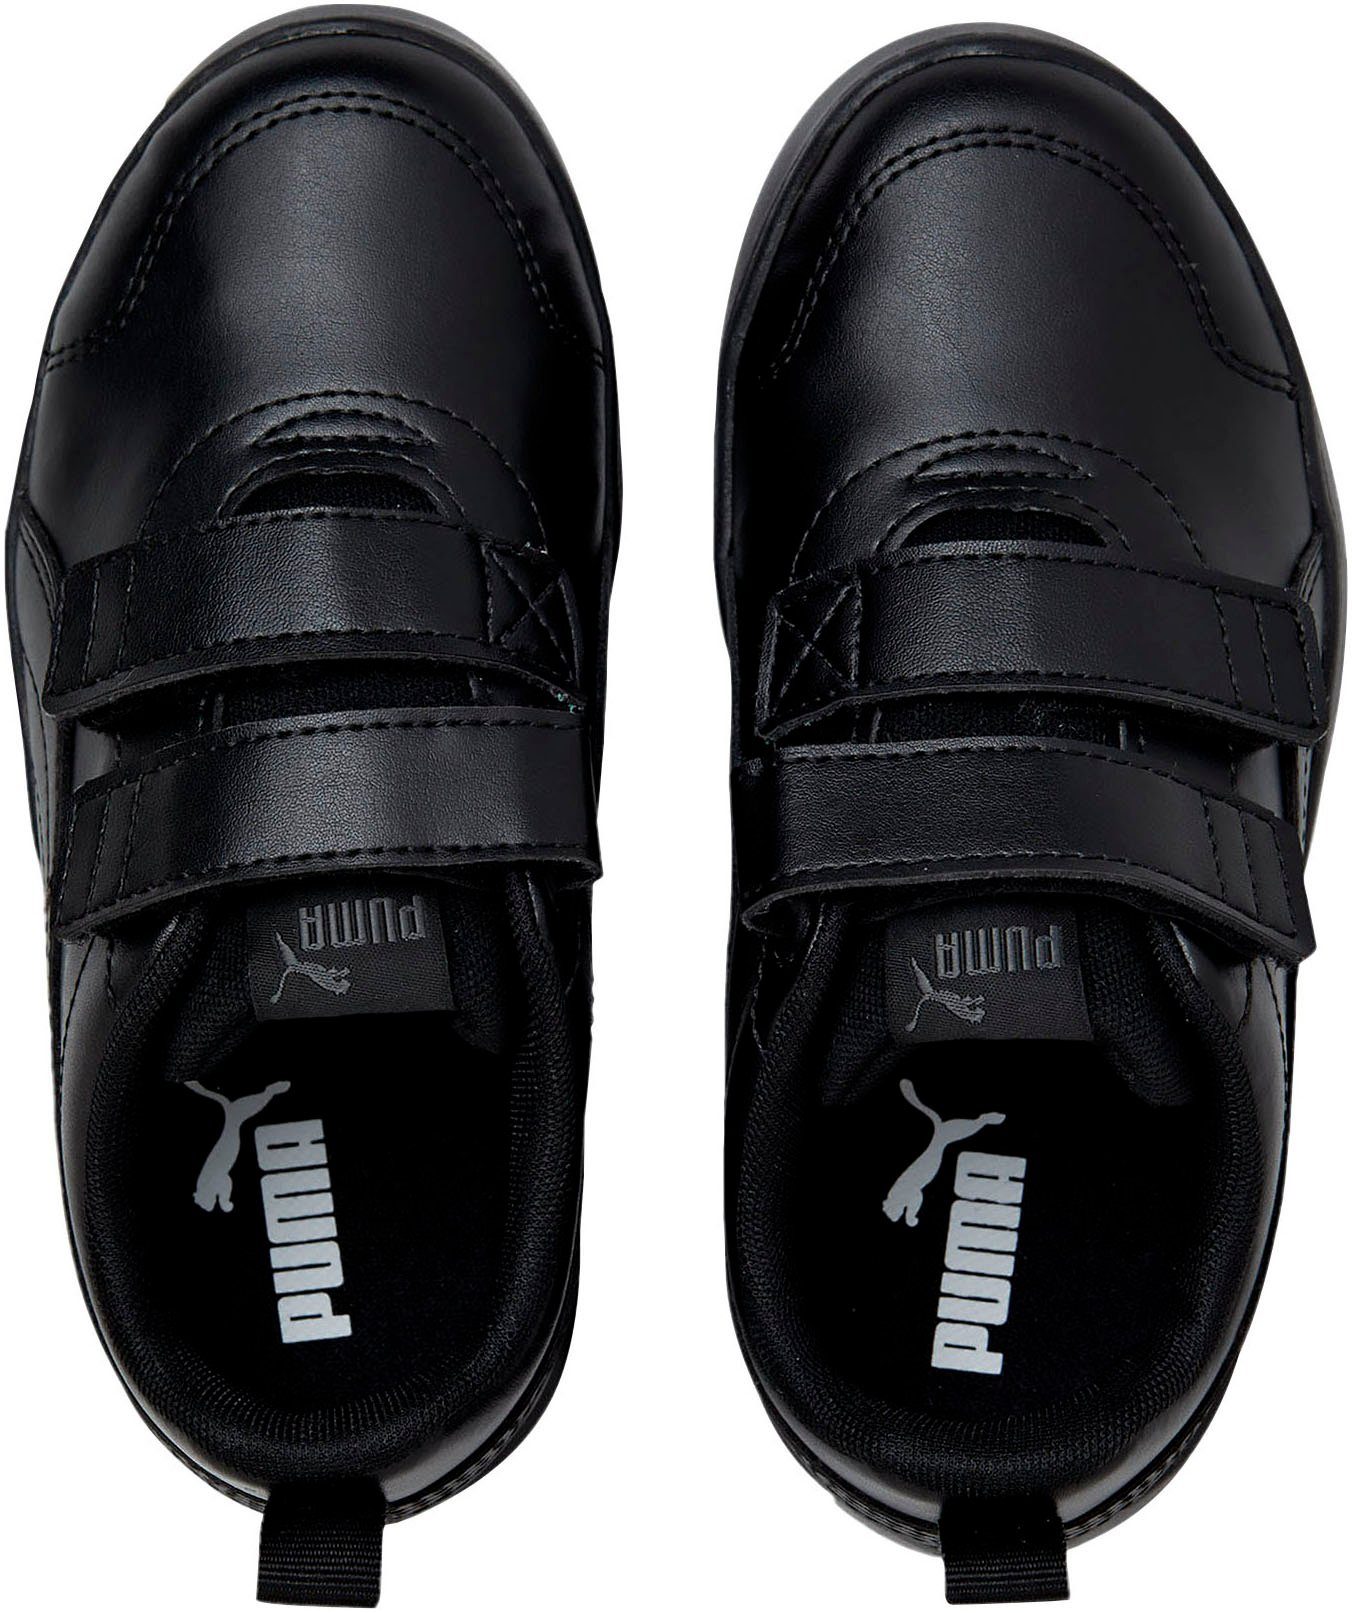 V PS mit Courtflex für Klettverschluss Kinder v2 PUMA Sneaker schwarz